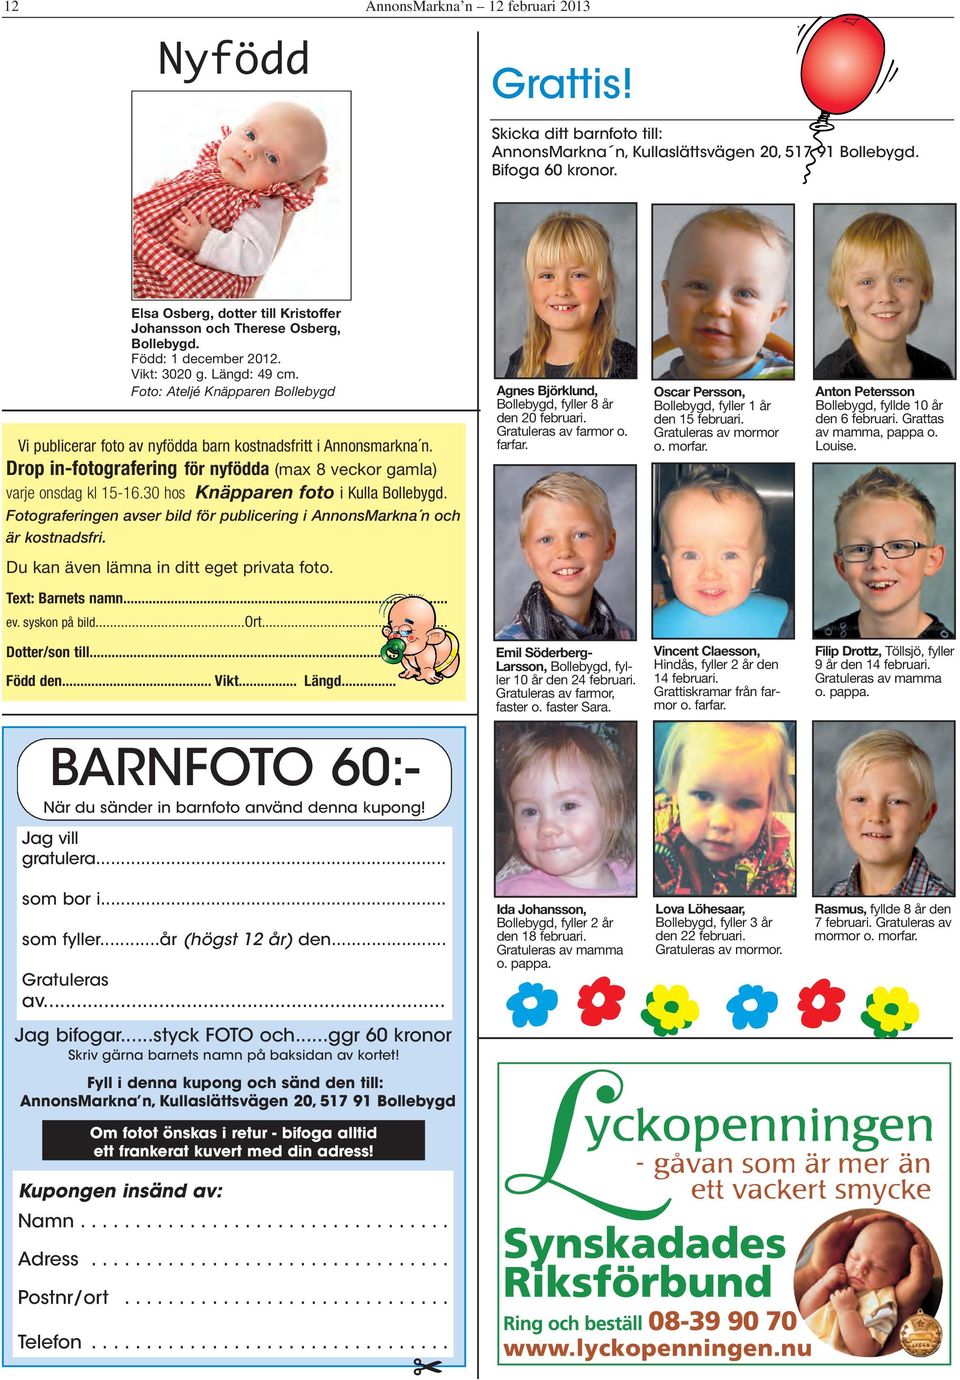 Foto: Ateljé Knäpparen Bollebygd Vi publicerar foto av nyfödda barn kostnadsfritt i Annonsmarkna n. Drop in-fotografering för nyfödda (max 8 veckor gamla) varje onsdag kl 15-16.